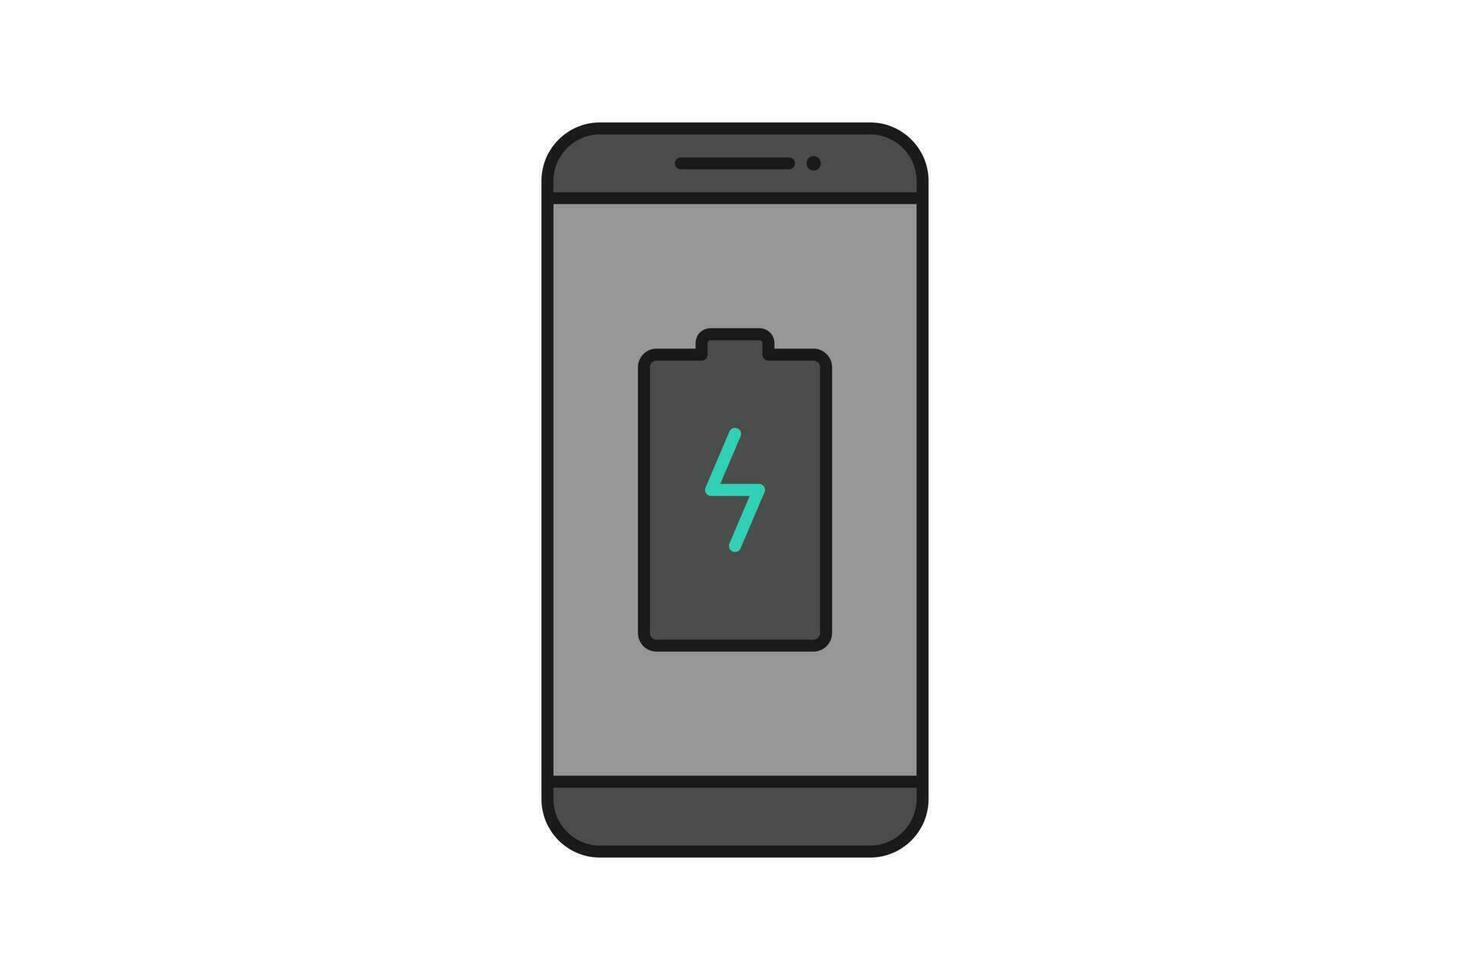 Smartphone bateria notificação vetor ícone placa símbolo, Smartphone e bateria carregar